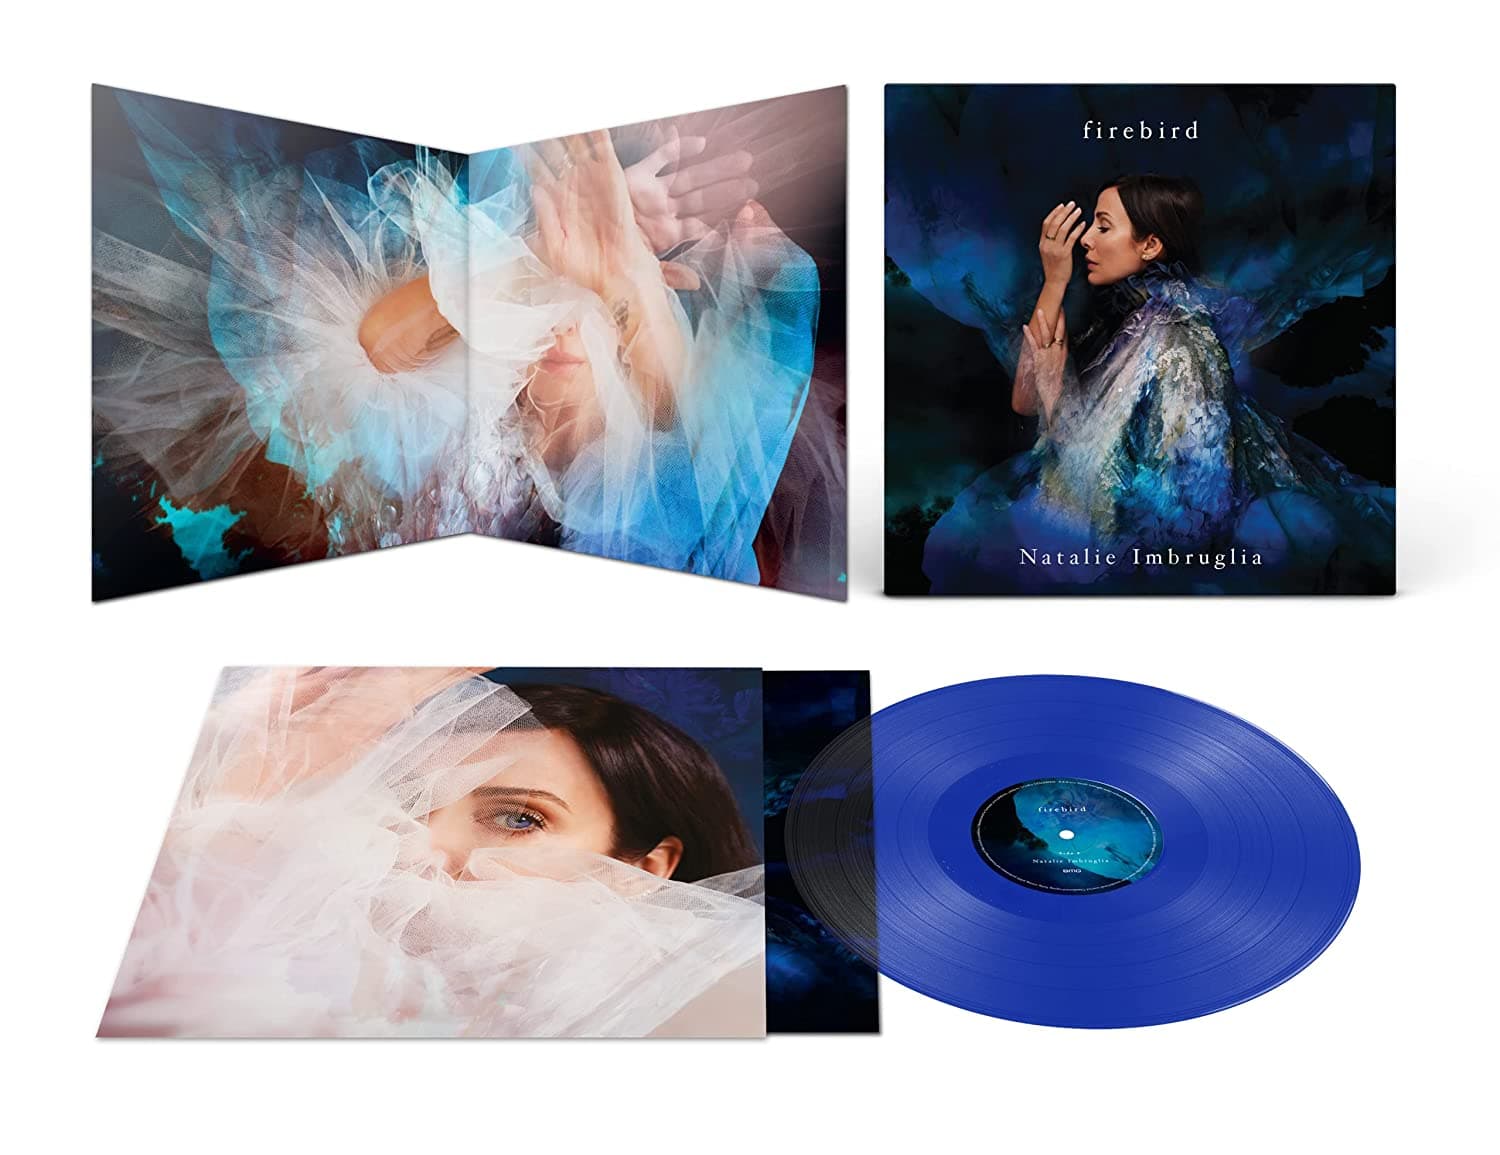 Natalie Imbruglia "Firebird" Blue Limited LP